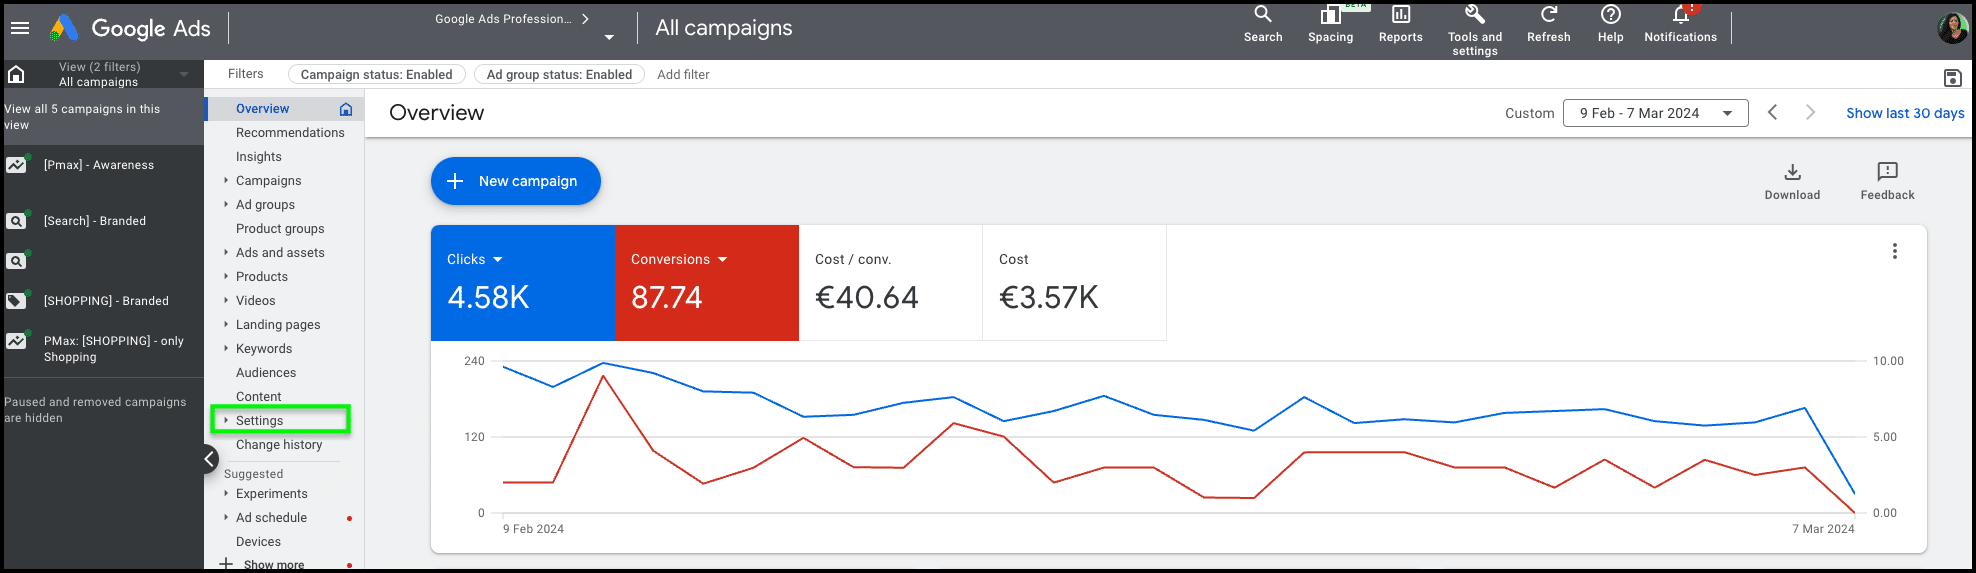 Google Ads Dashboard mit Leistungsübersicht, darstellend Klicks, Konversionen, Kosten und Zeitverlauf der Kampagnenperformance.